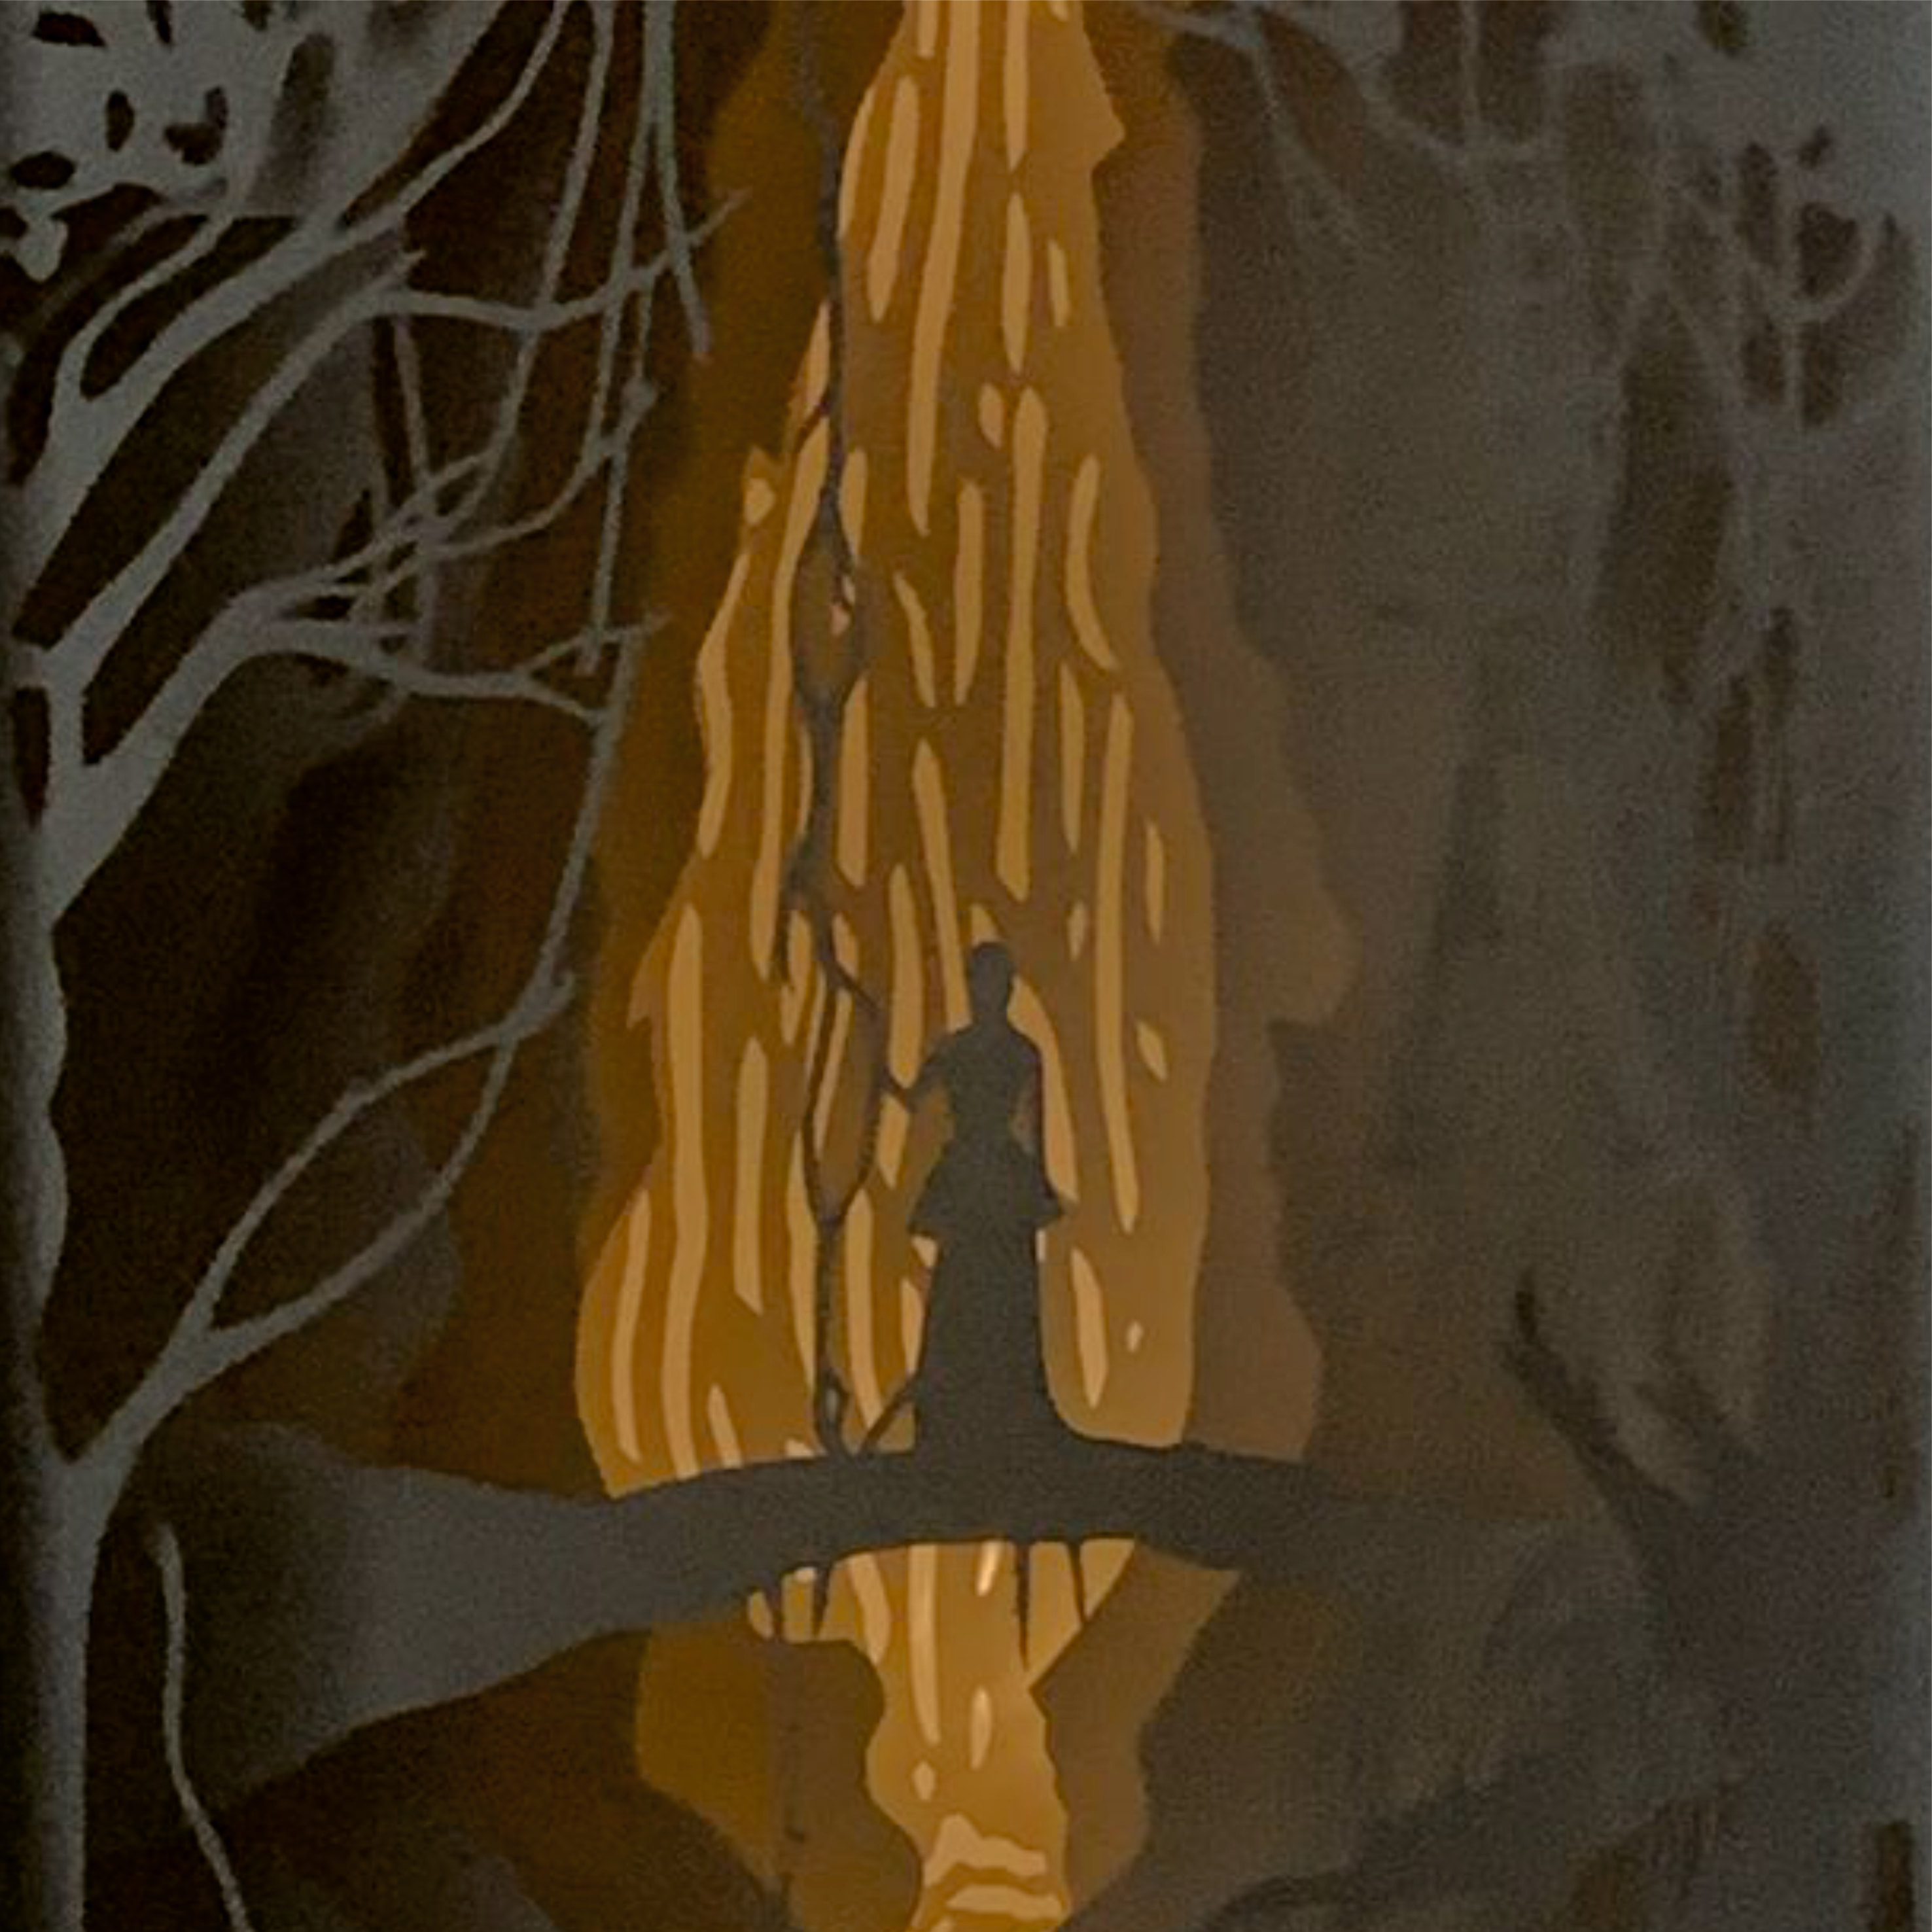 Шиянова Дарья Владимировна
Ночник "Девушка в таинственном лесу", выполненный из бумаги и картона.